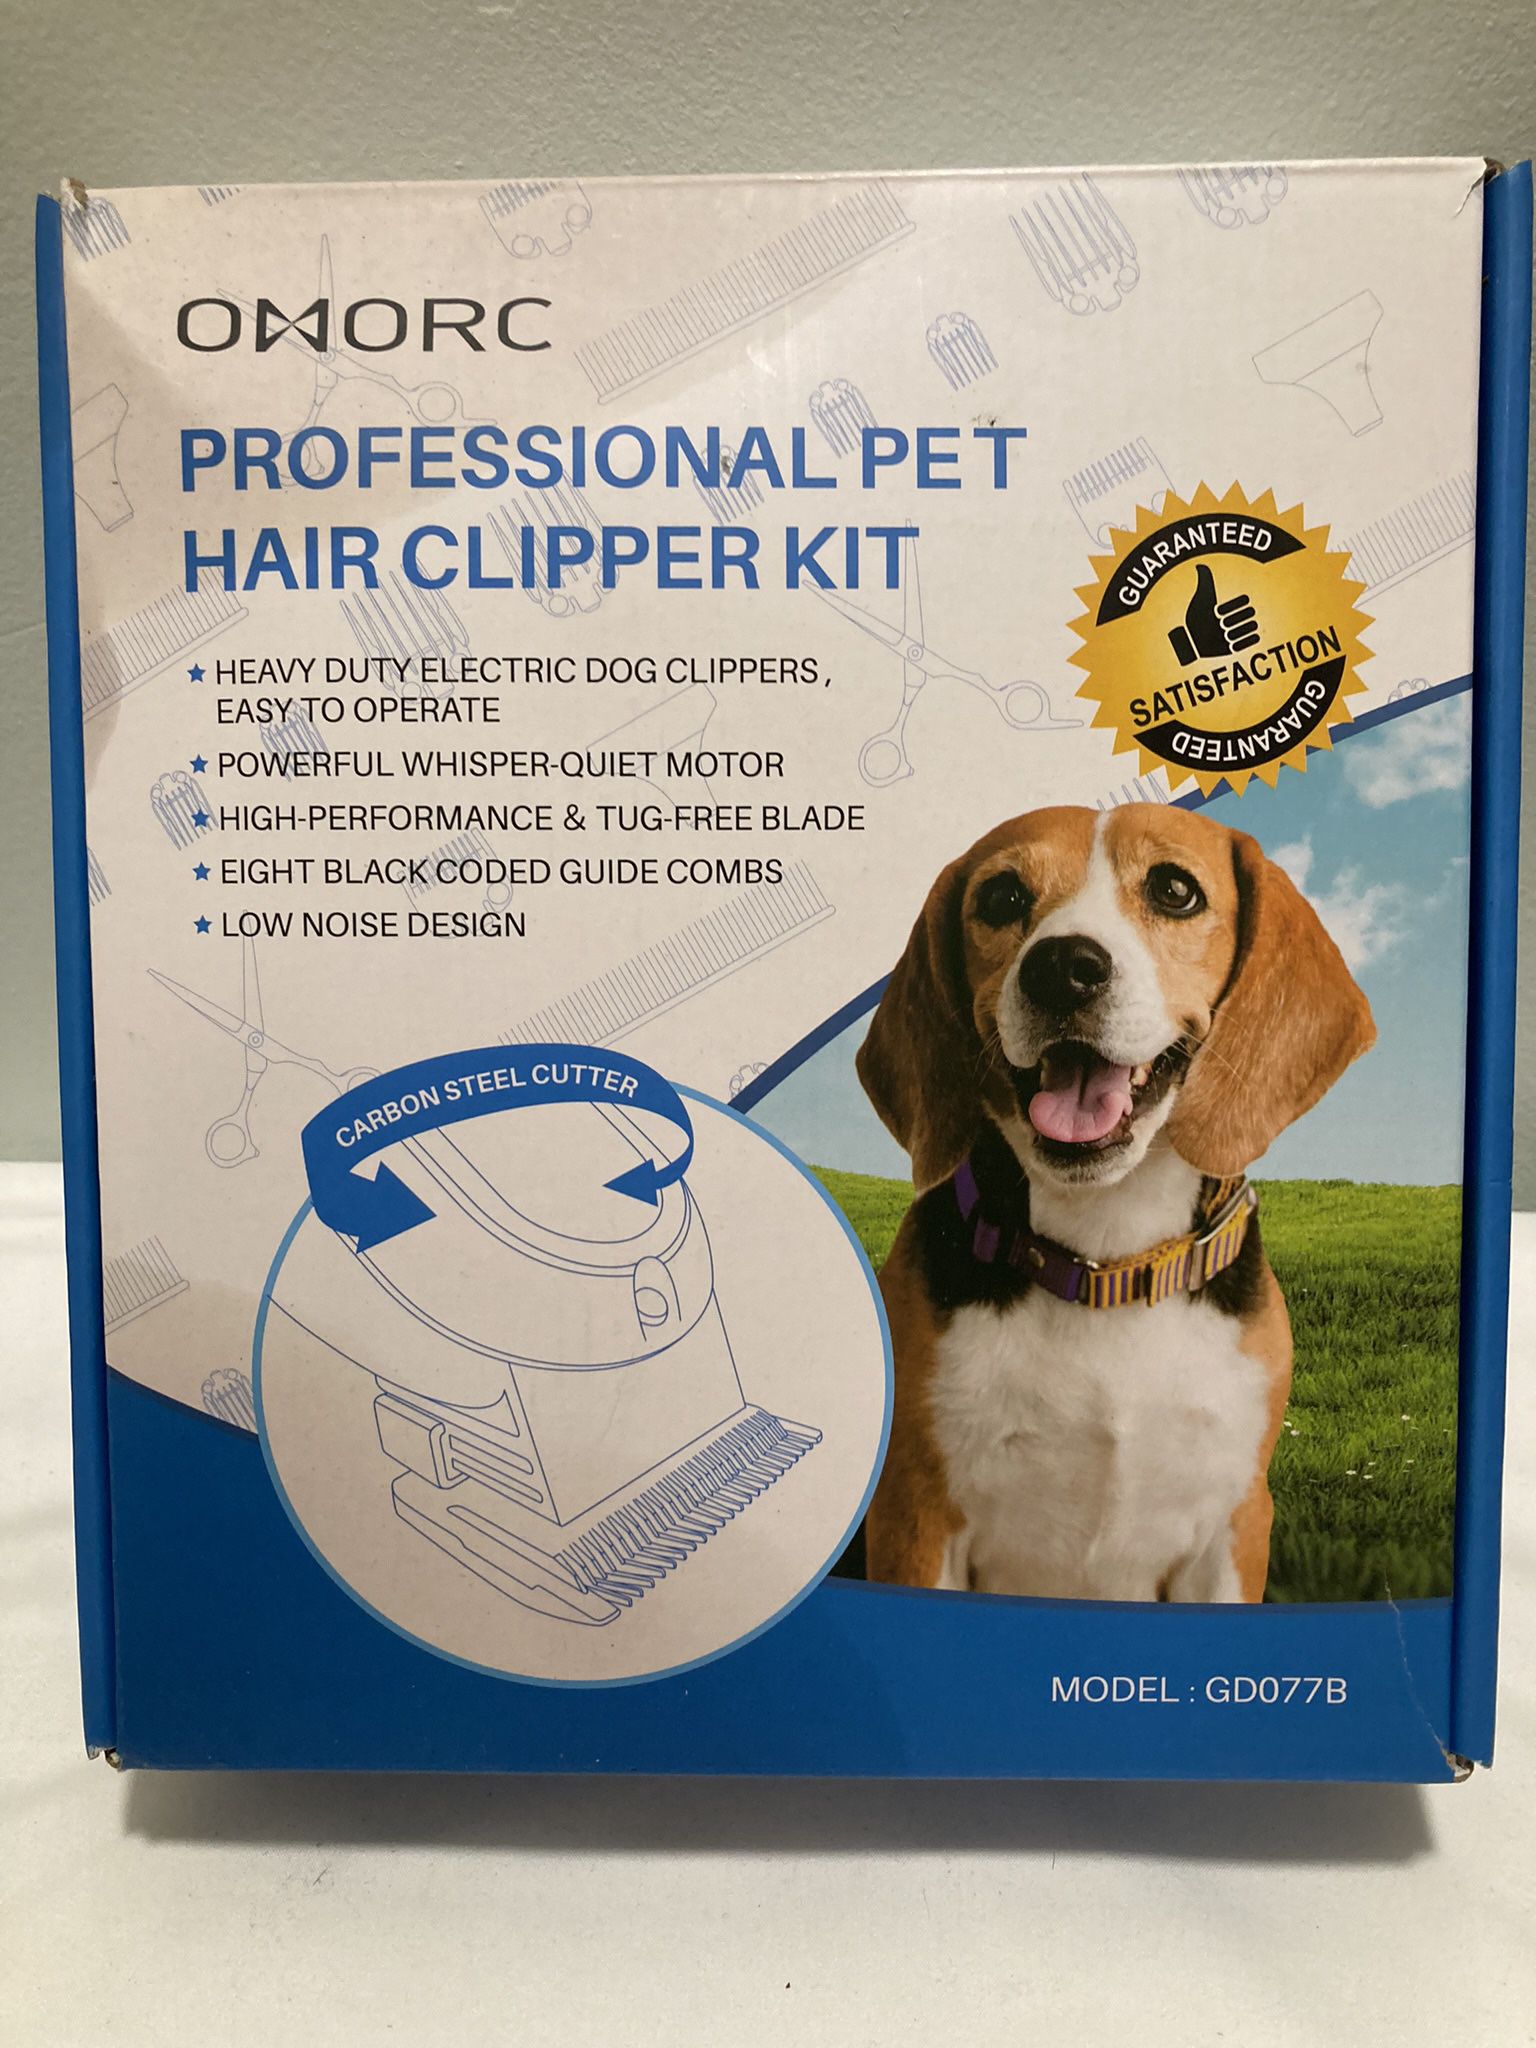 Pet Grooming Kit